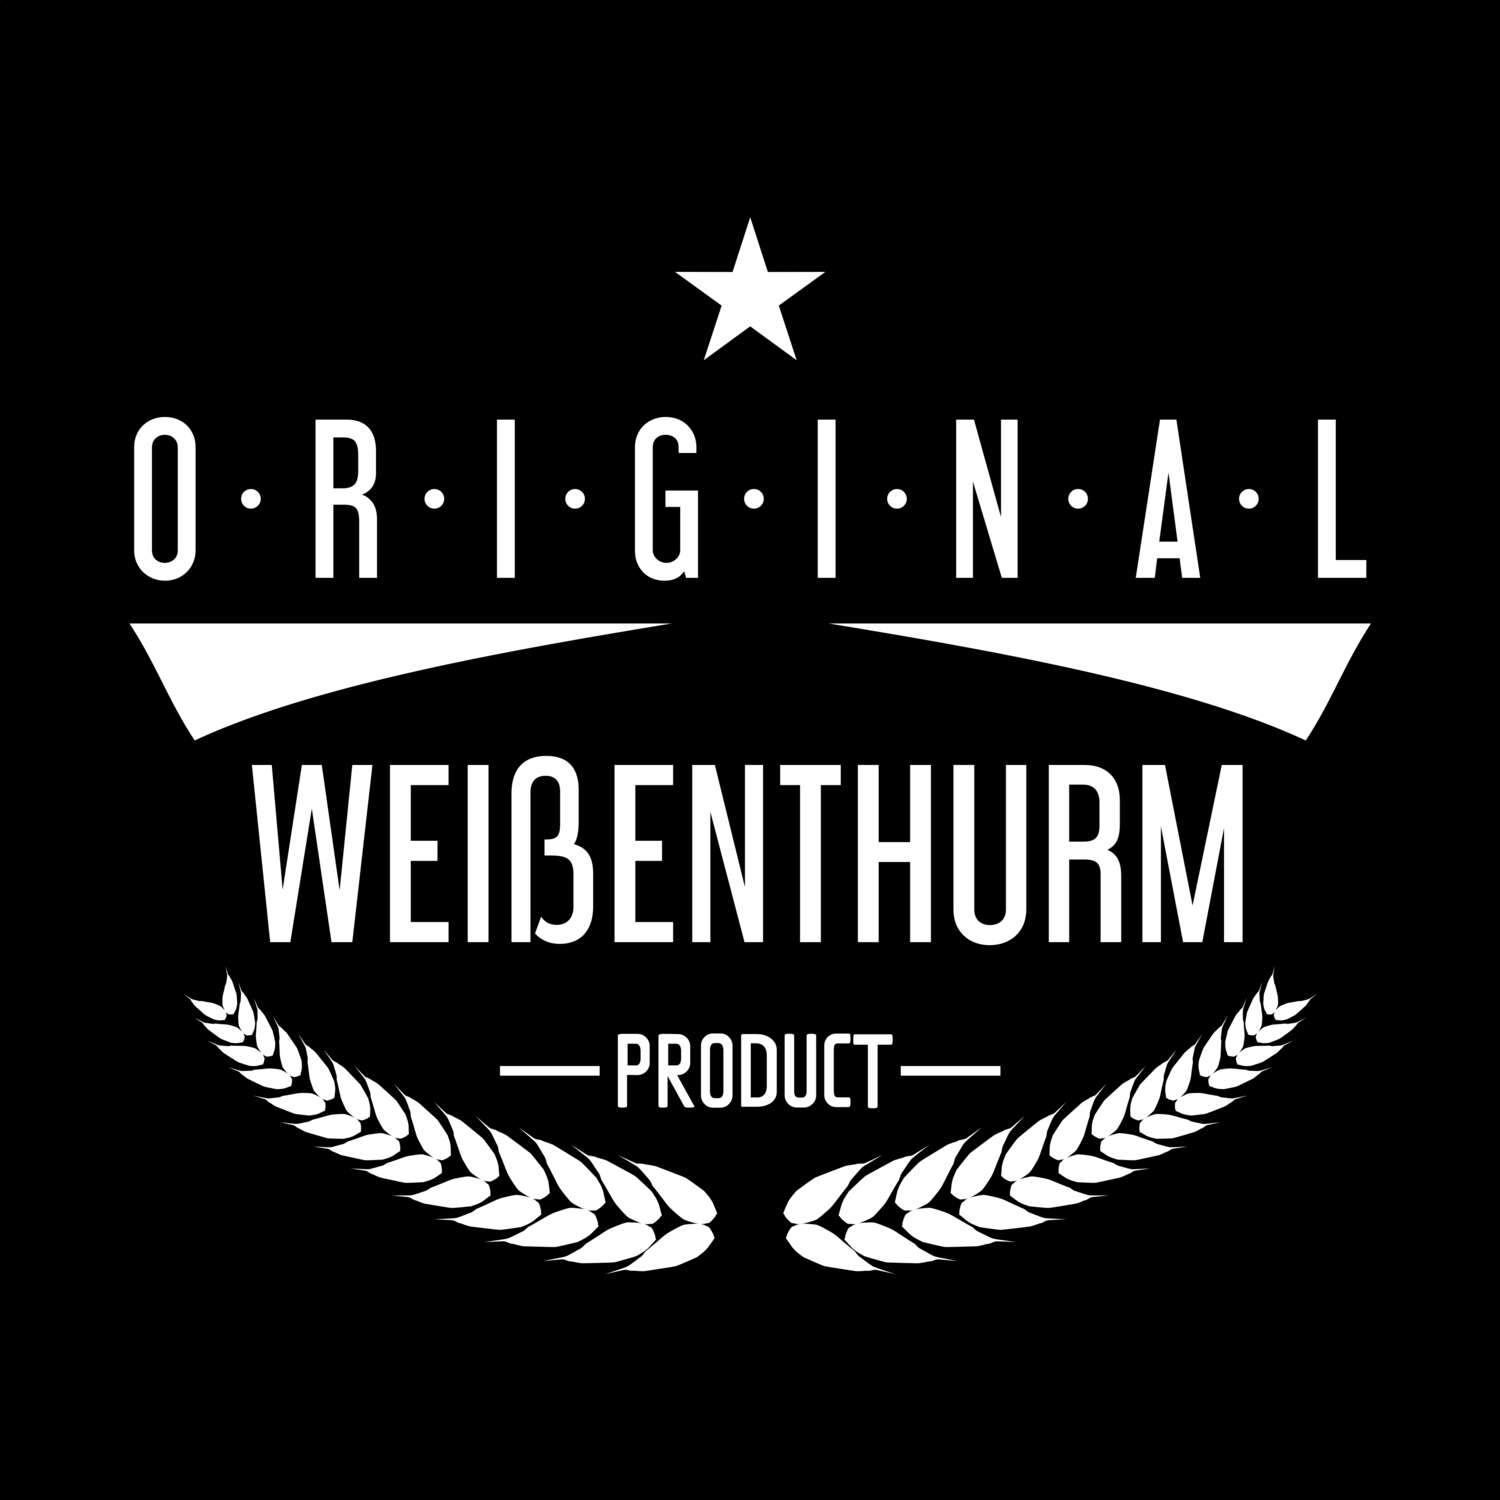 Weißenthurm T-Shirt »Original Product«